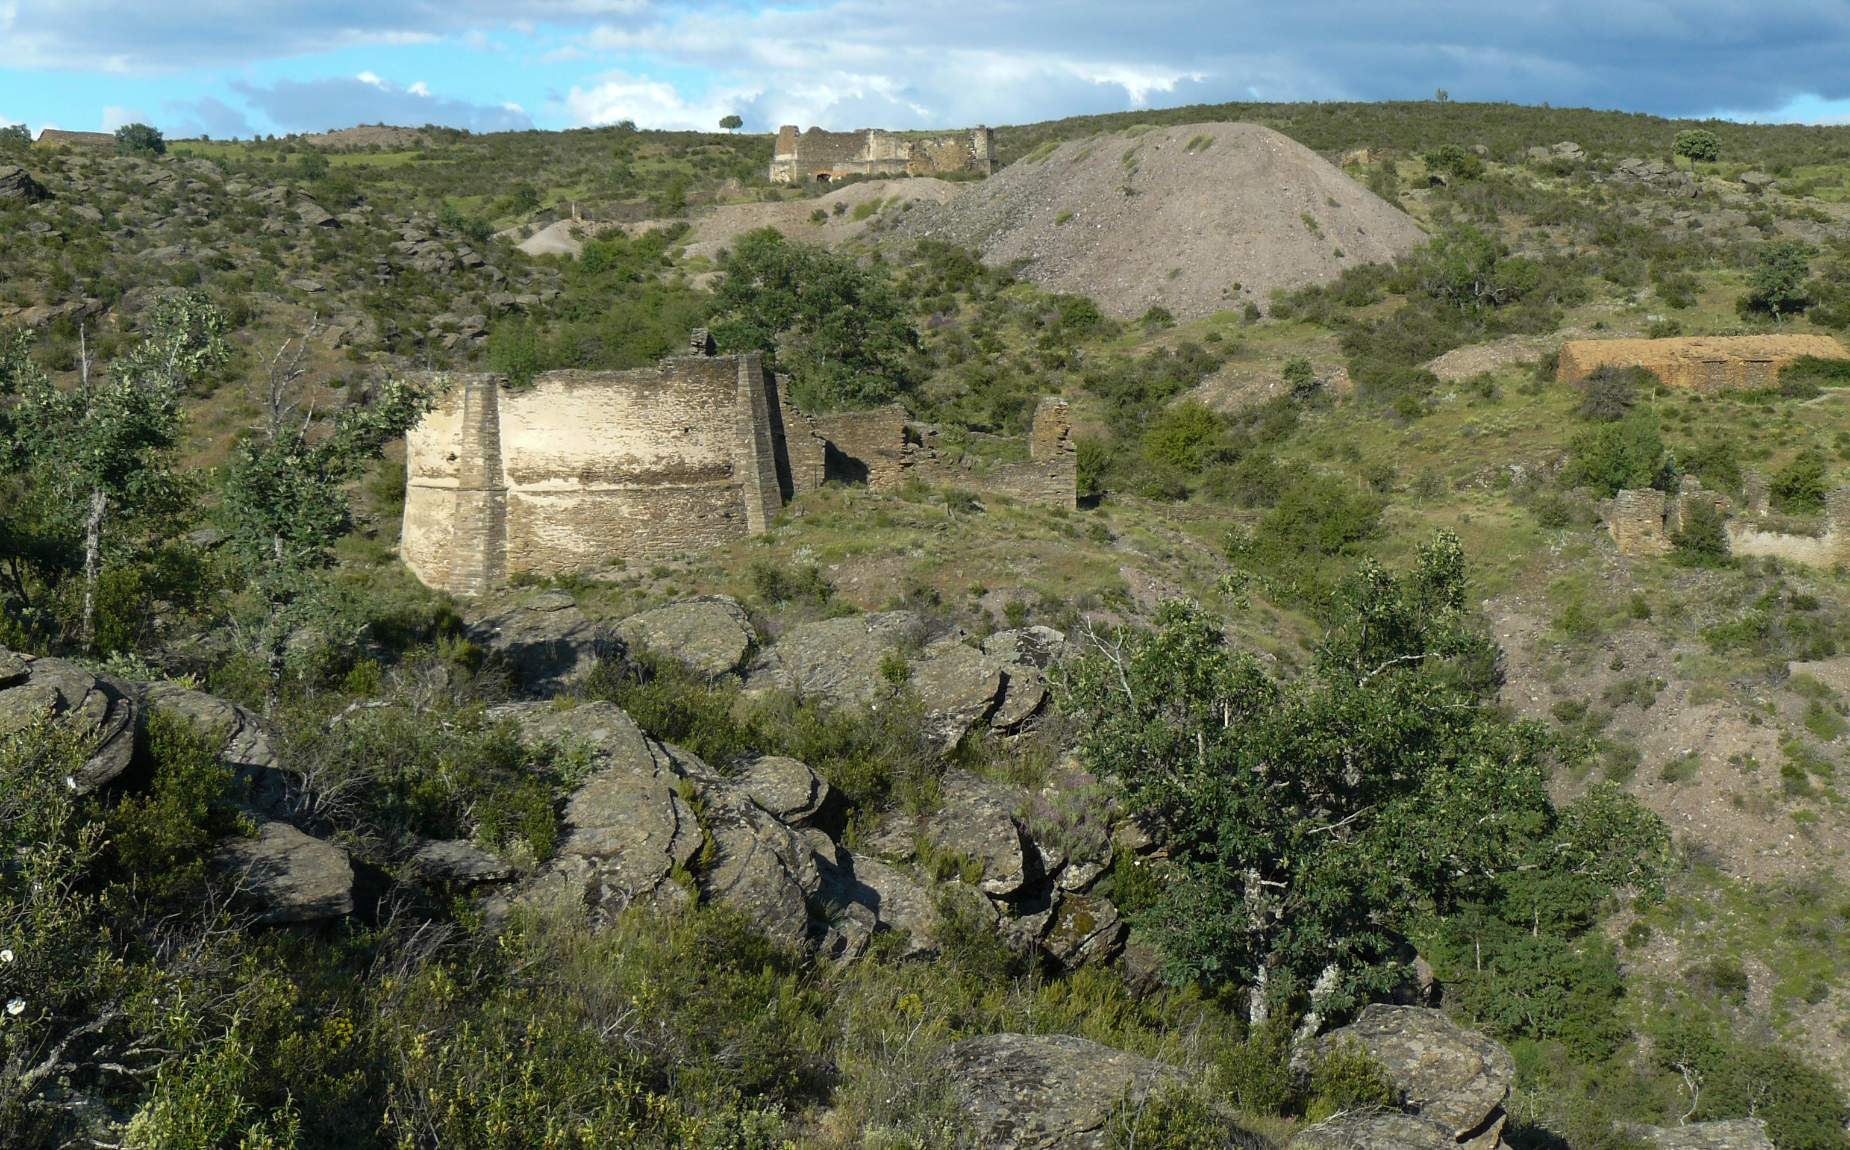 Paisaje de arboles y rocas con edificios antiguos en ruinas